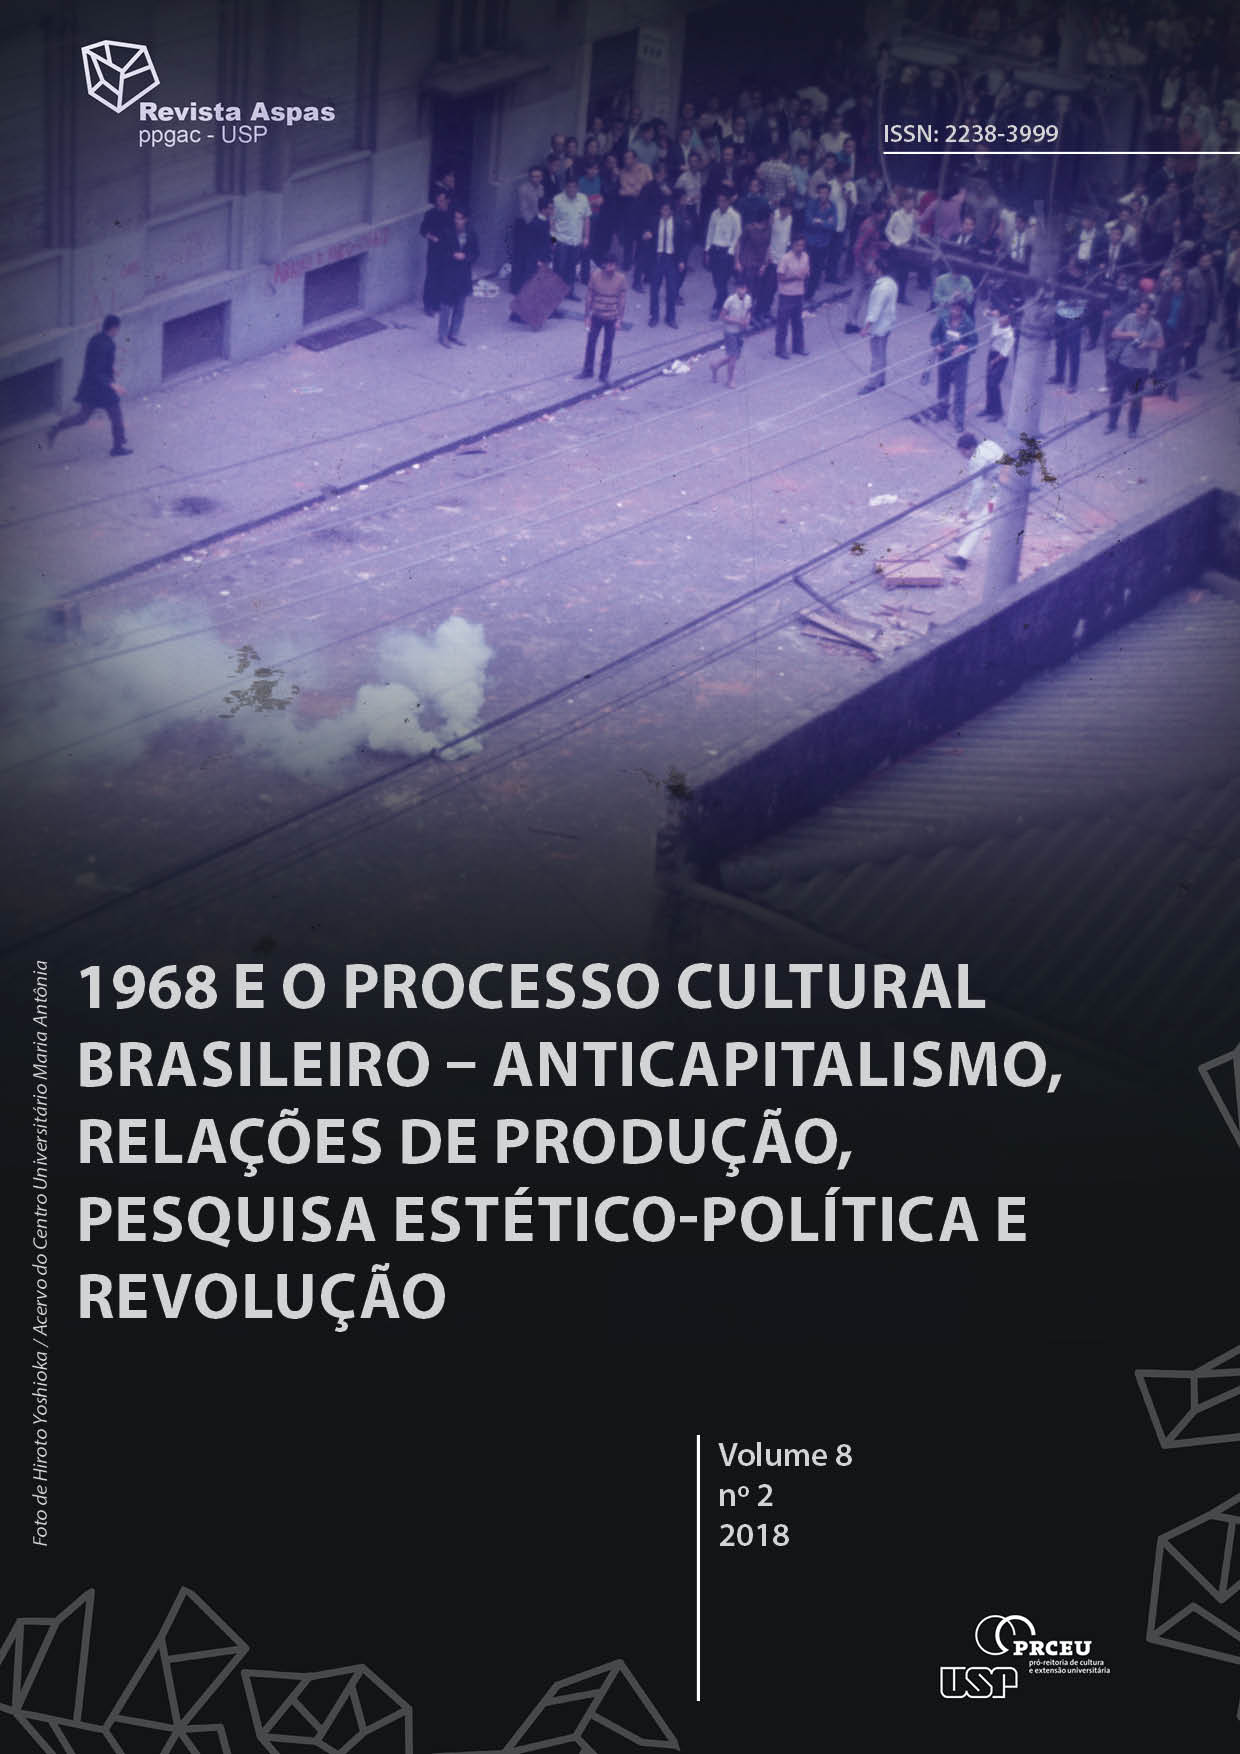 					Visualizar v. 8 n. 2 (2018): 1968 e o processo cultural brasileiro - anticapitalismo, relações de produção, pesquisa estético-política e revolução
				